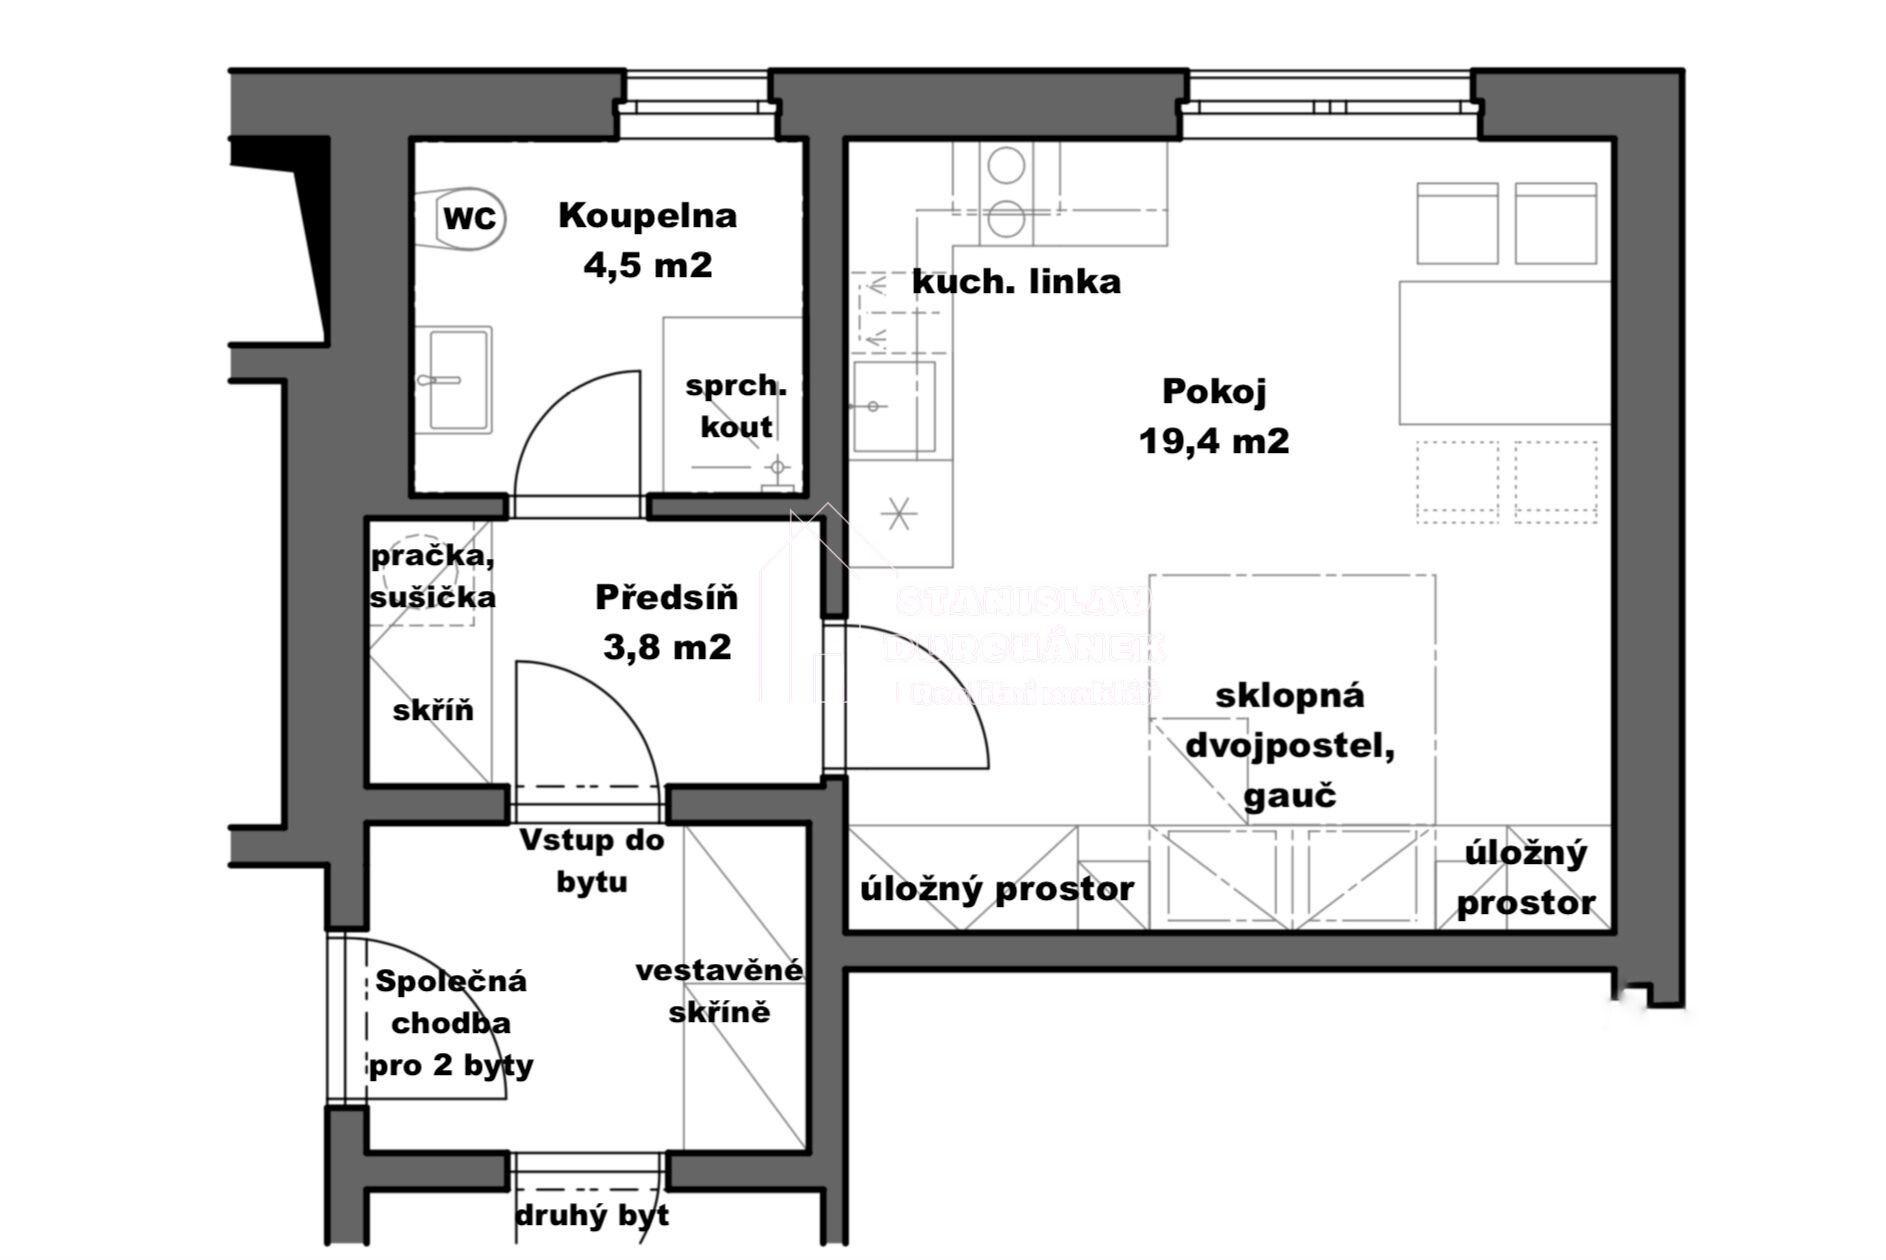 Pronájem zařízeného bytu 1+kk, 27,8 m2, Praha 8-Střížkov, ulice Střížkovská, 5 minut od metra